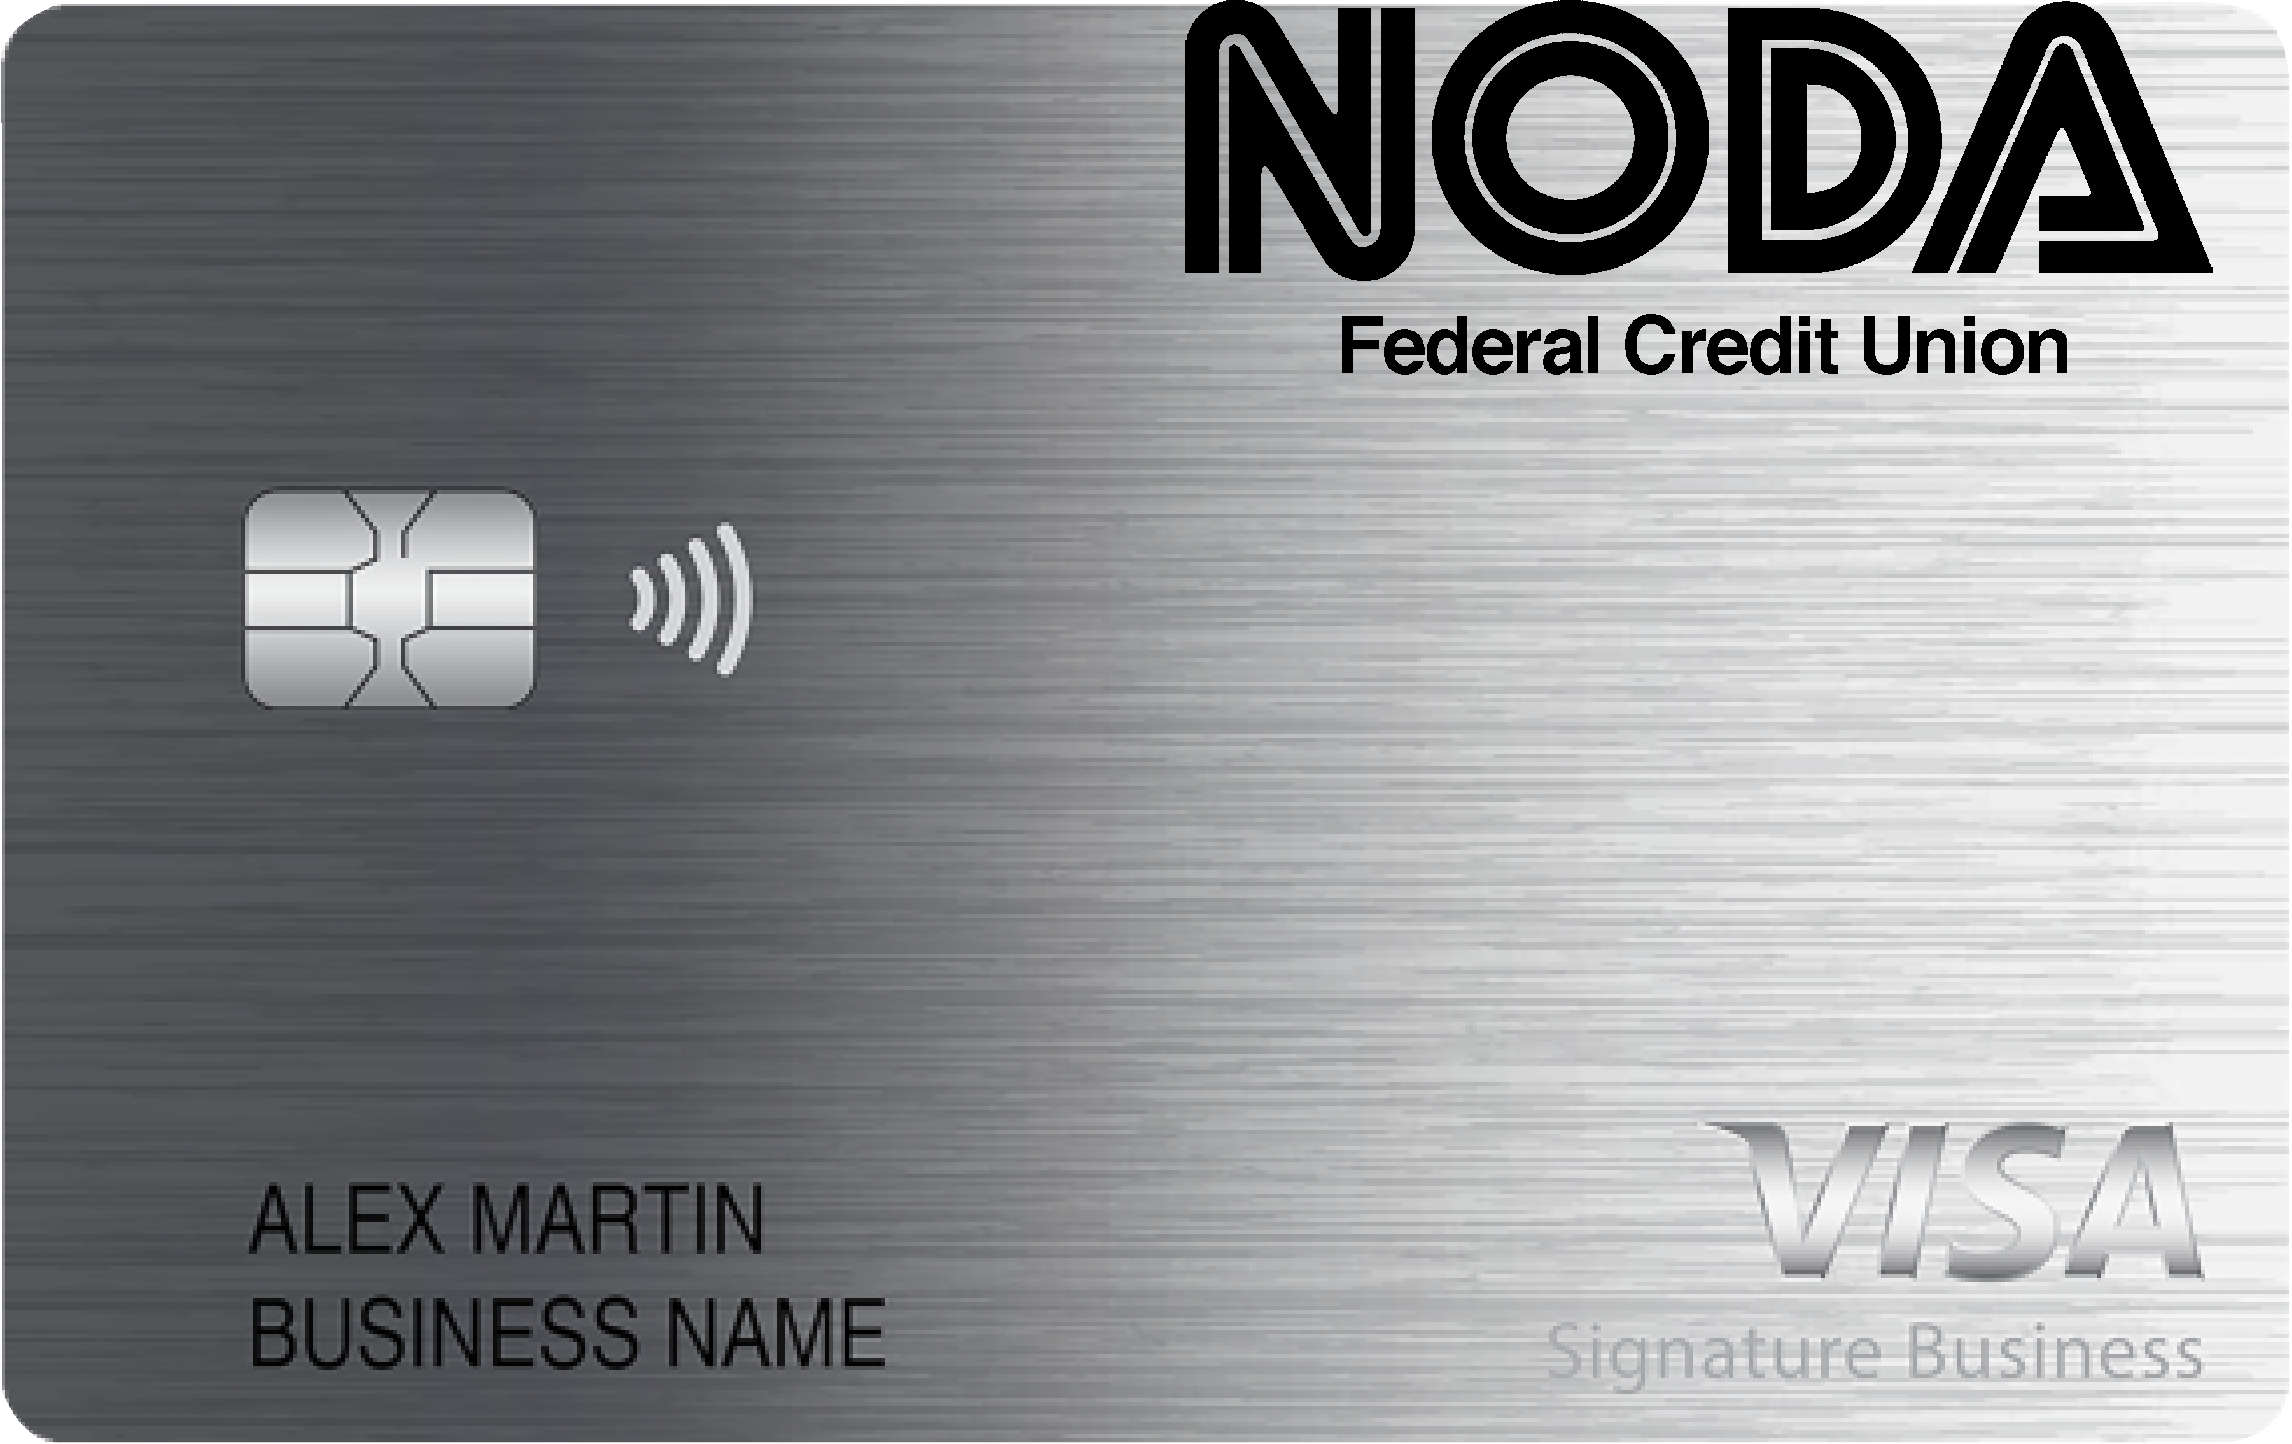 NODA Federal Credit Union Smart Business Rewards Card